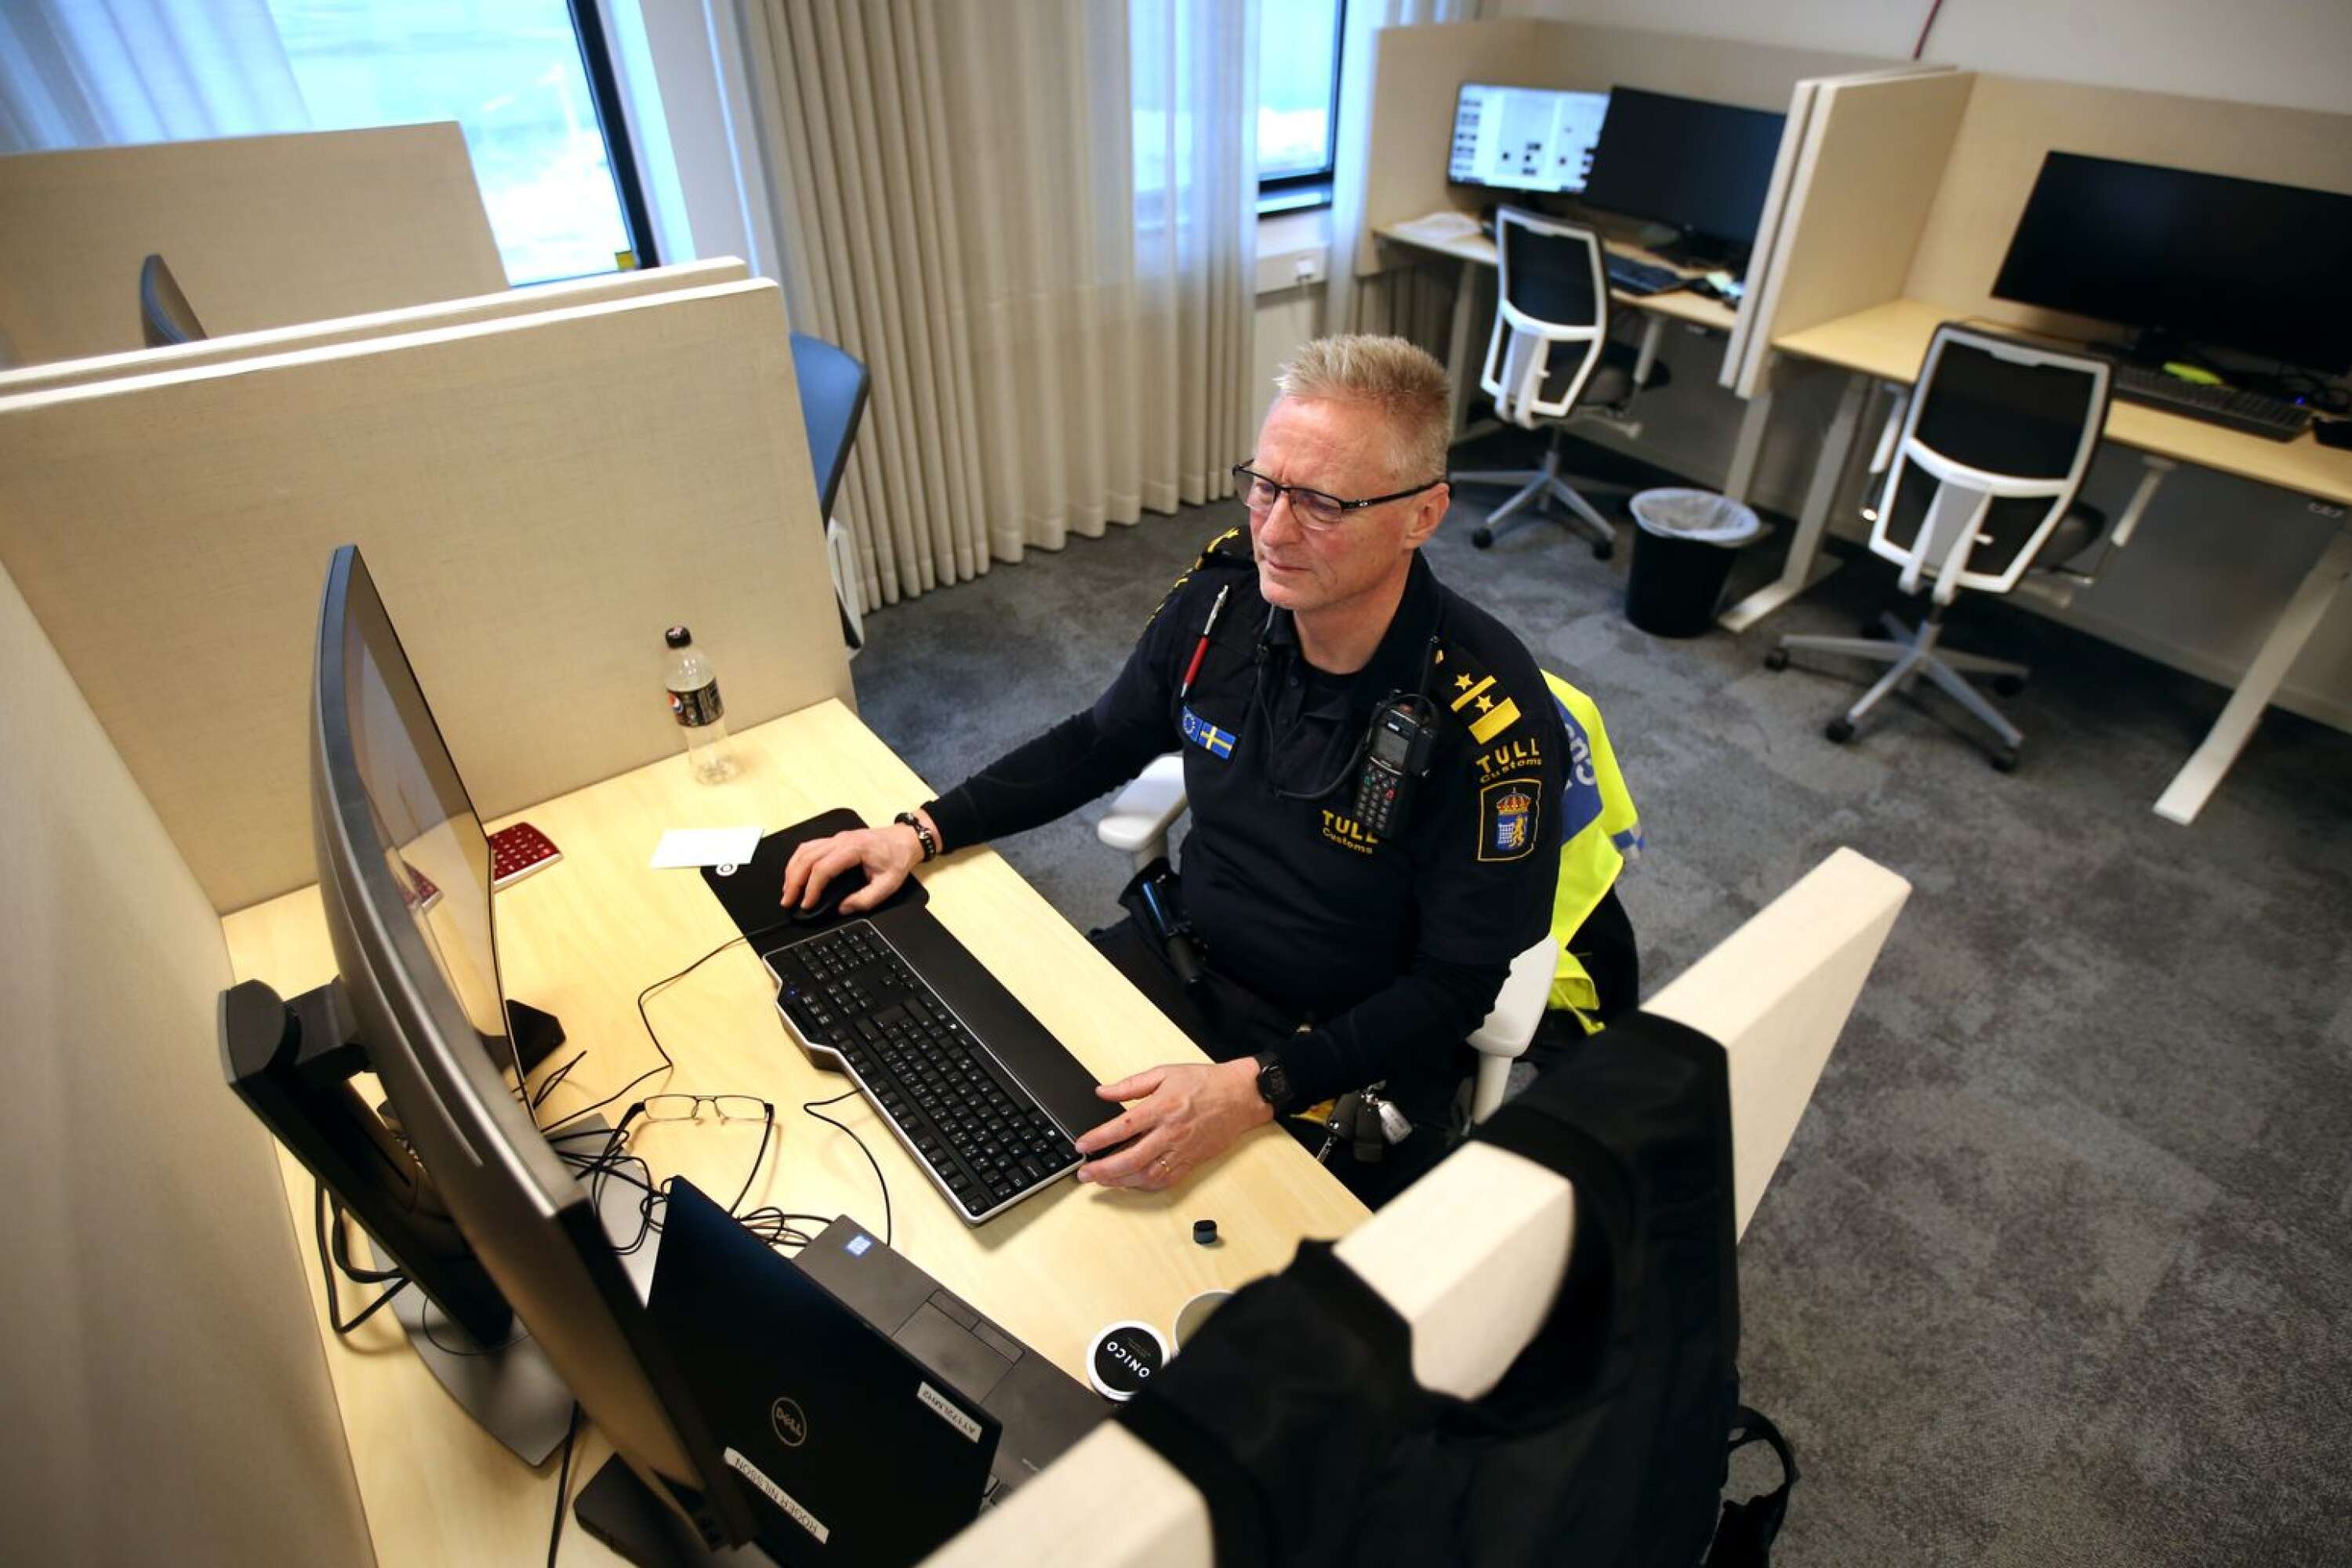 Sedan sommaren 2020 har tullen i Hån nya lokaler. Det uppskattas av personalen. Här arbetar Roger Nilsson i det aktivitetsbaserade kontorslandskapet.